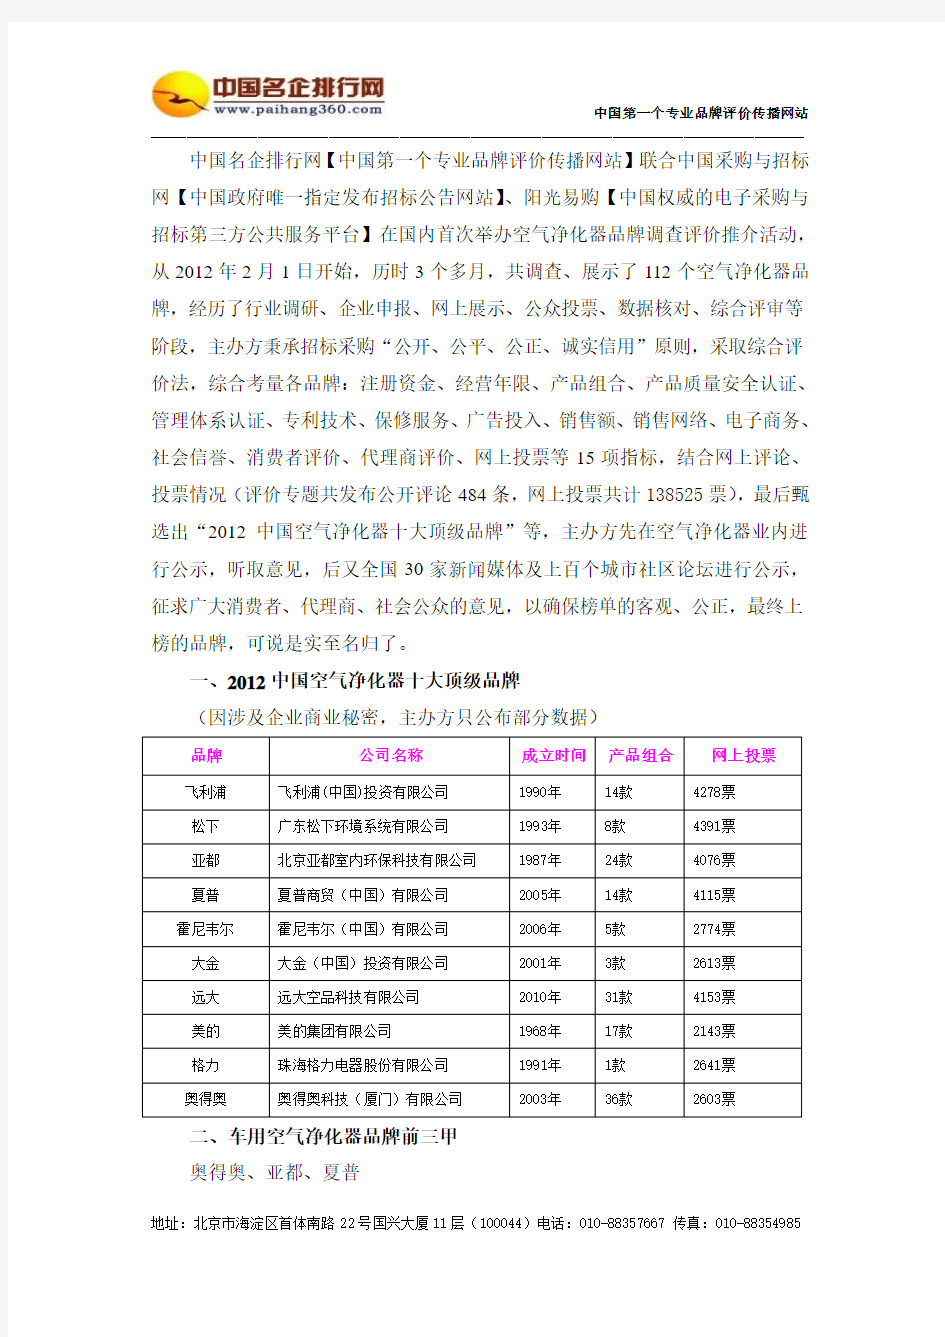 2012中国车用空气净化器三甲品牌